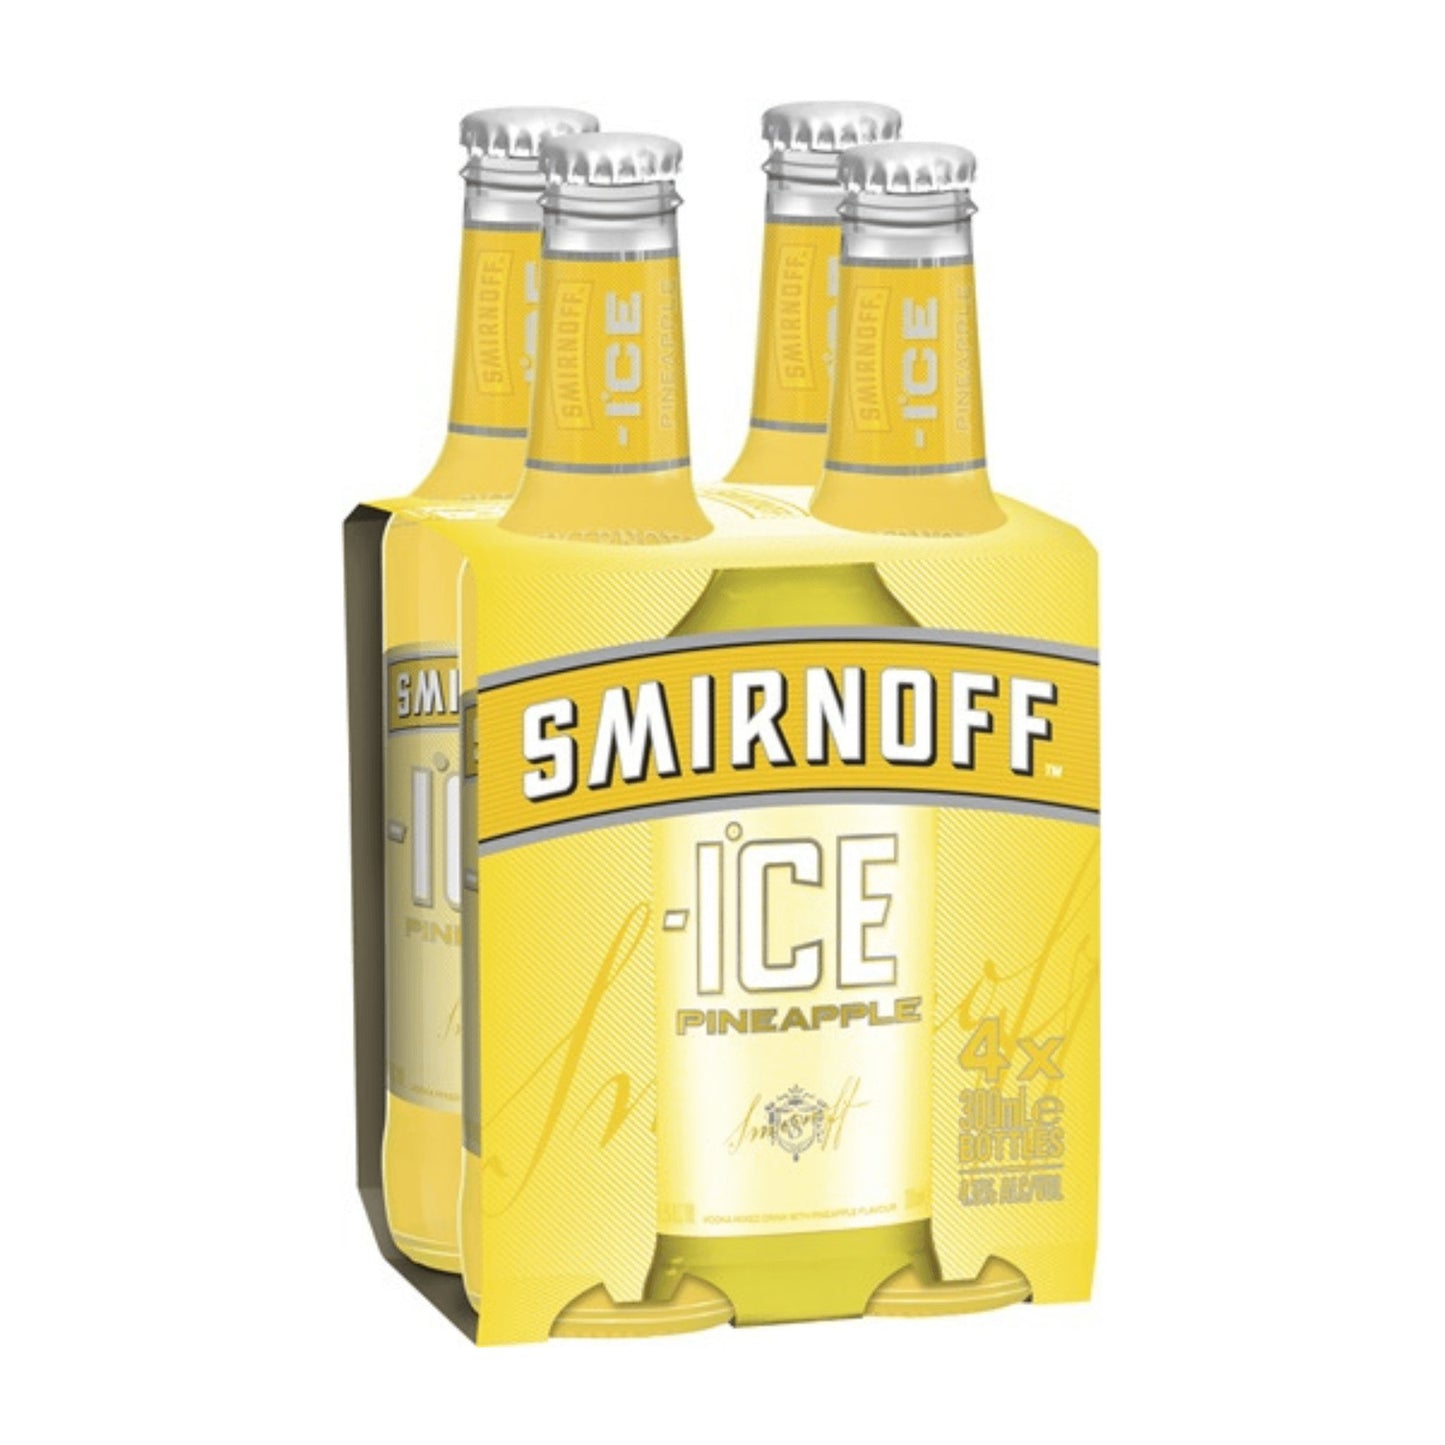 Smirnoff Ice Pineapple Vodka 300ml - Booze House